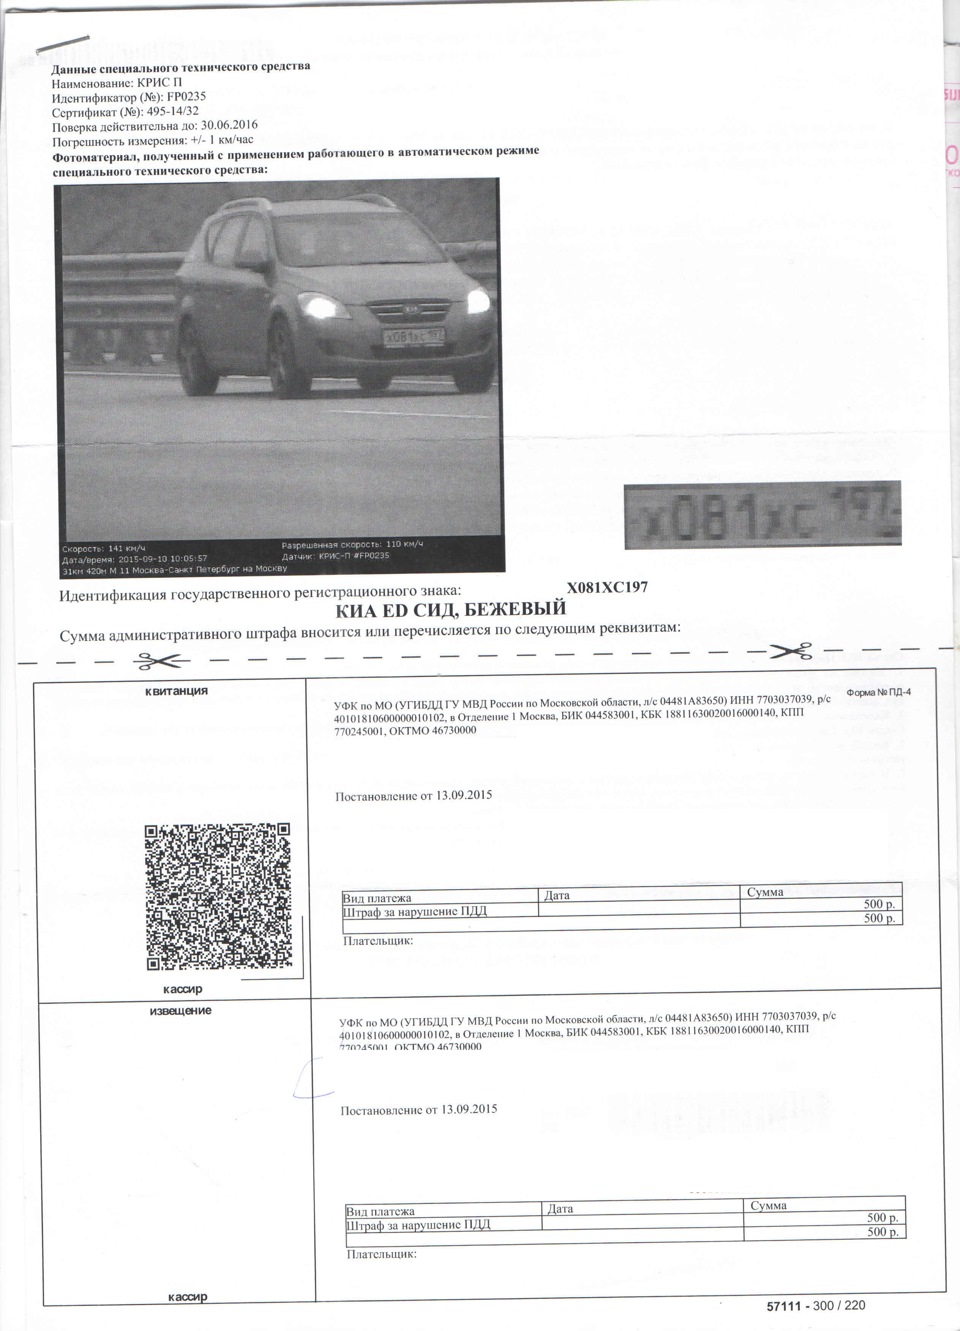 Штрафы с фотографиями по номеру автомобиля